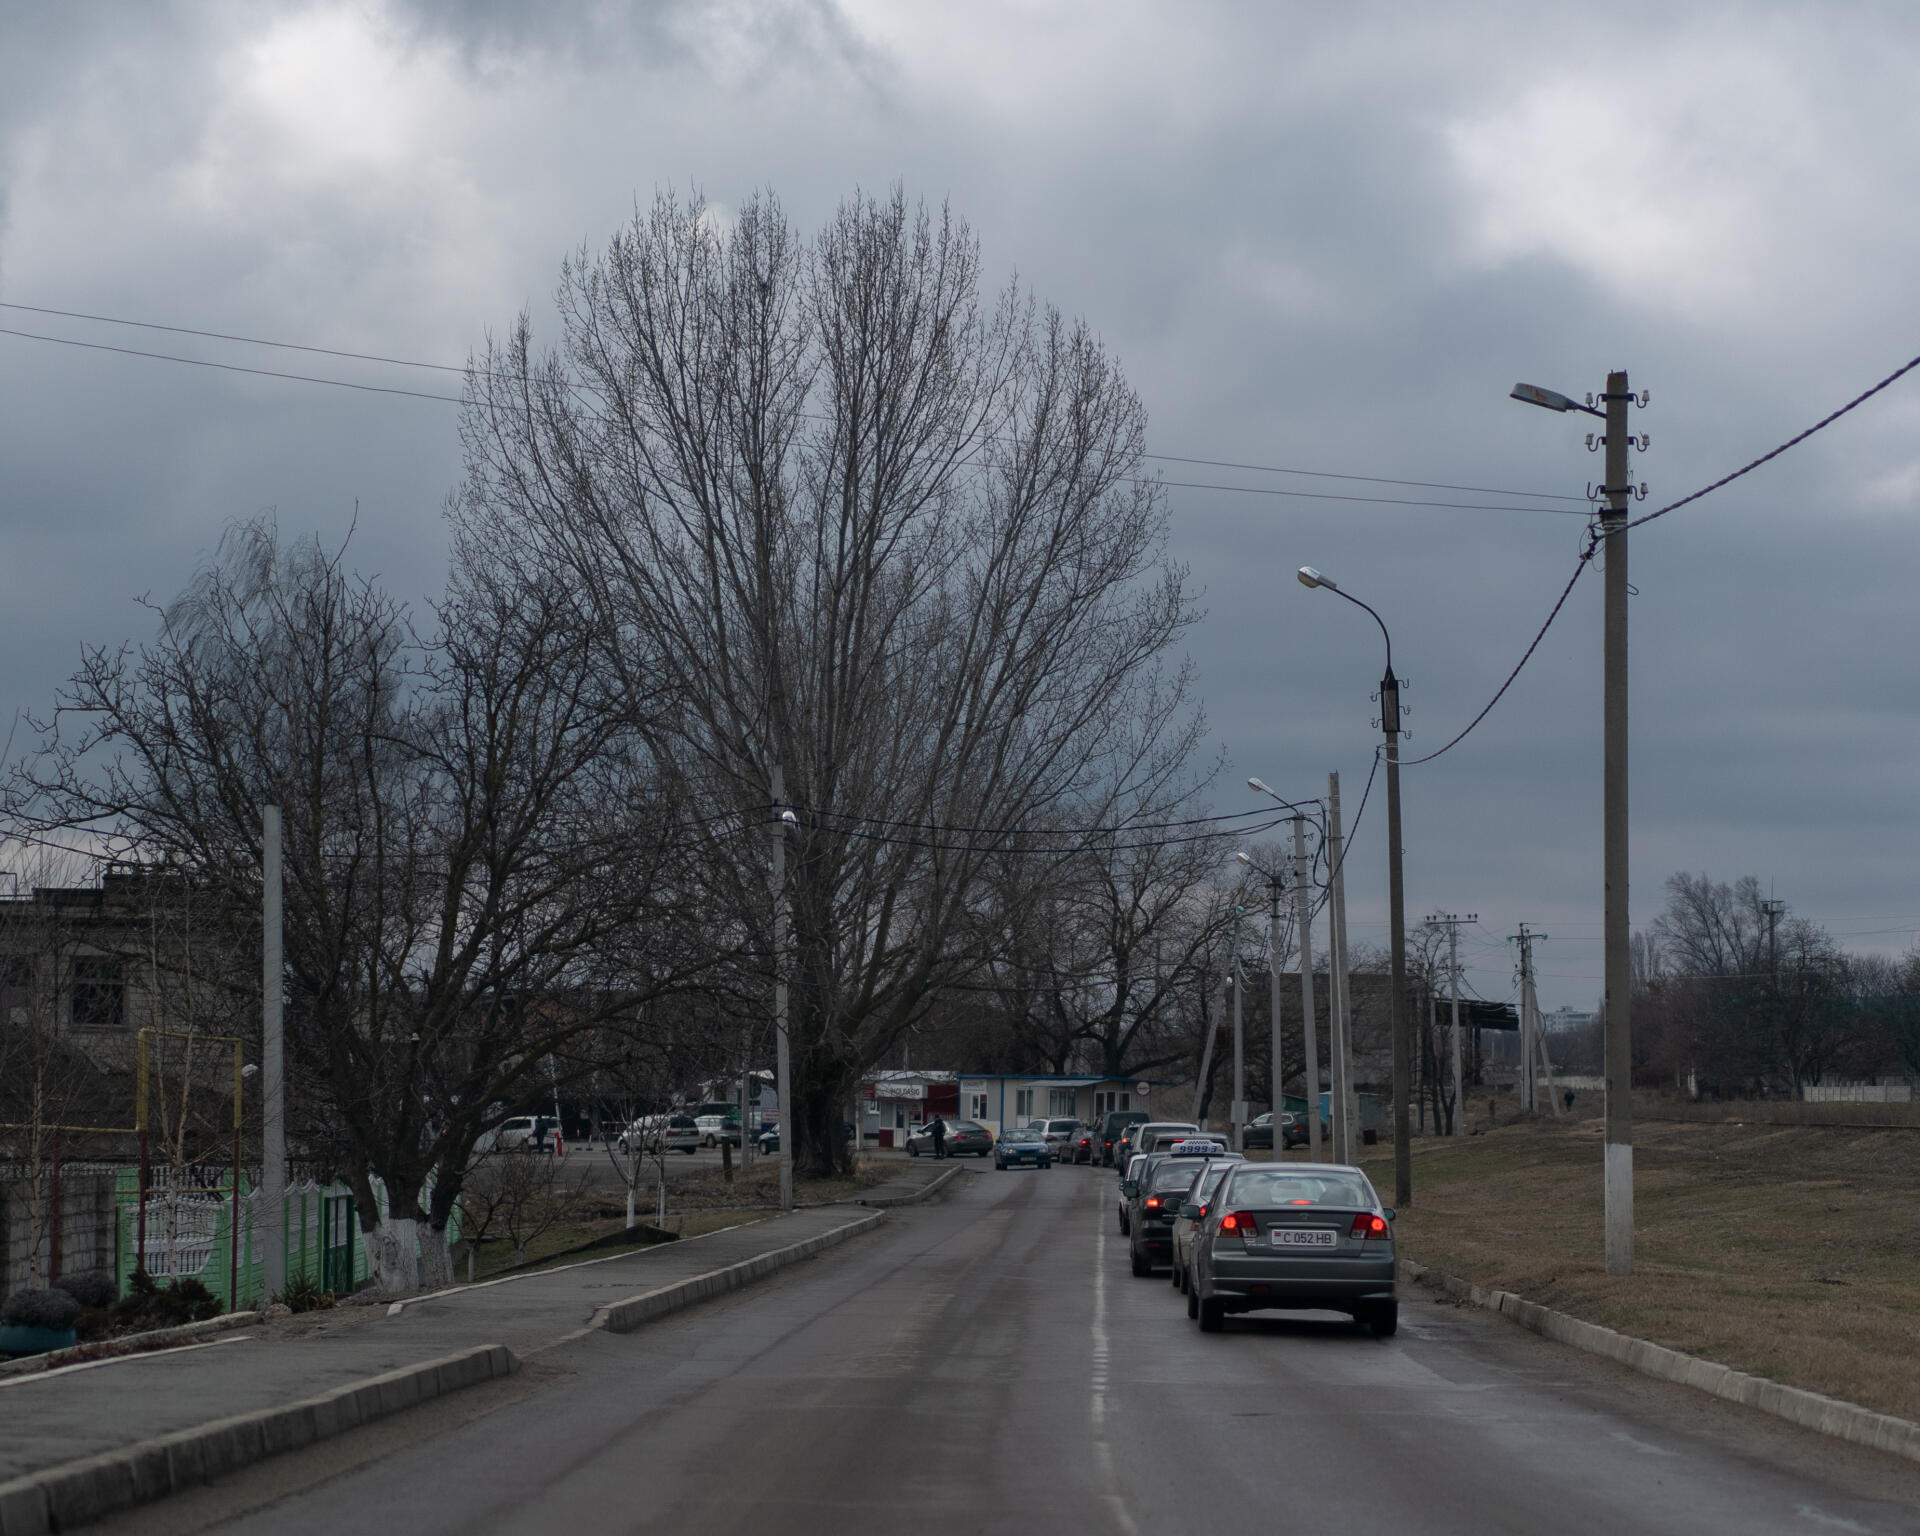 Kolejka samochodów do przekroczenia posterunku granicznego we wsi Varneta, położonej na granicy z Mołdawią w kierunku Naddniestrza, samozwańczego prorosyjskiego podmiotu, między Mołdawią a Ukrainą.  Varneta, Mołdawia, 4 marca 2022 r.